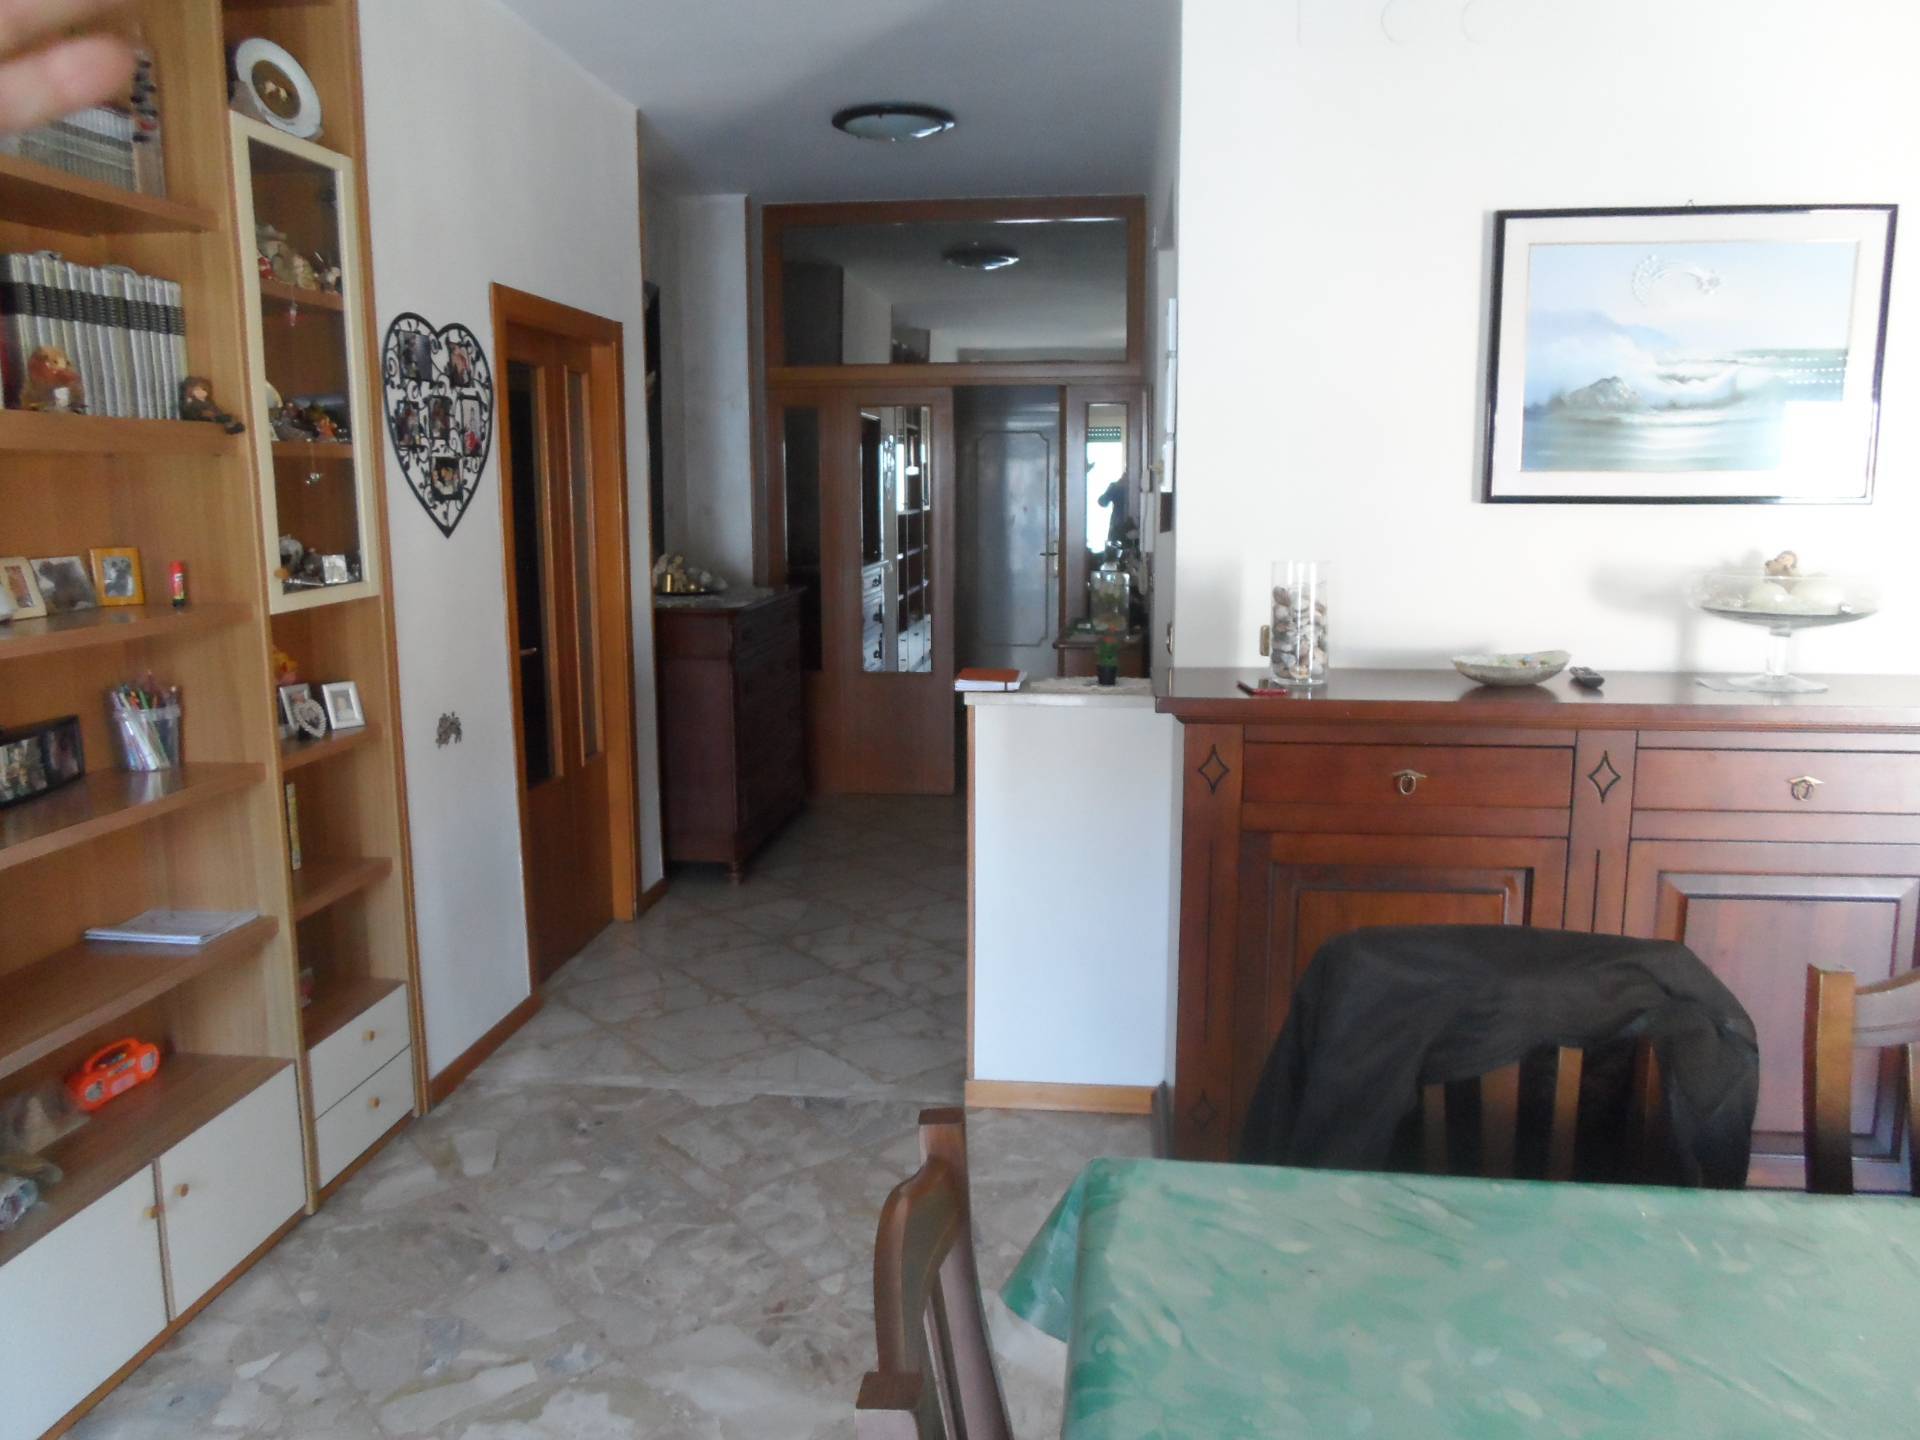 Appartamento in vendita a San Benedetto del Tronto, 6 locali, zona Località: PortodAscoli, prezzo € 290.000 | PortaleAgenzieImmobiliari.it